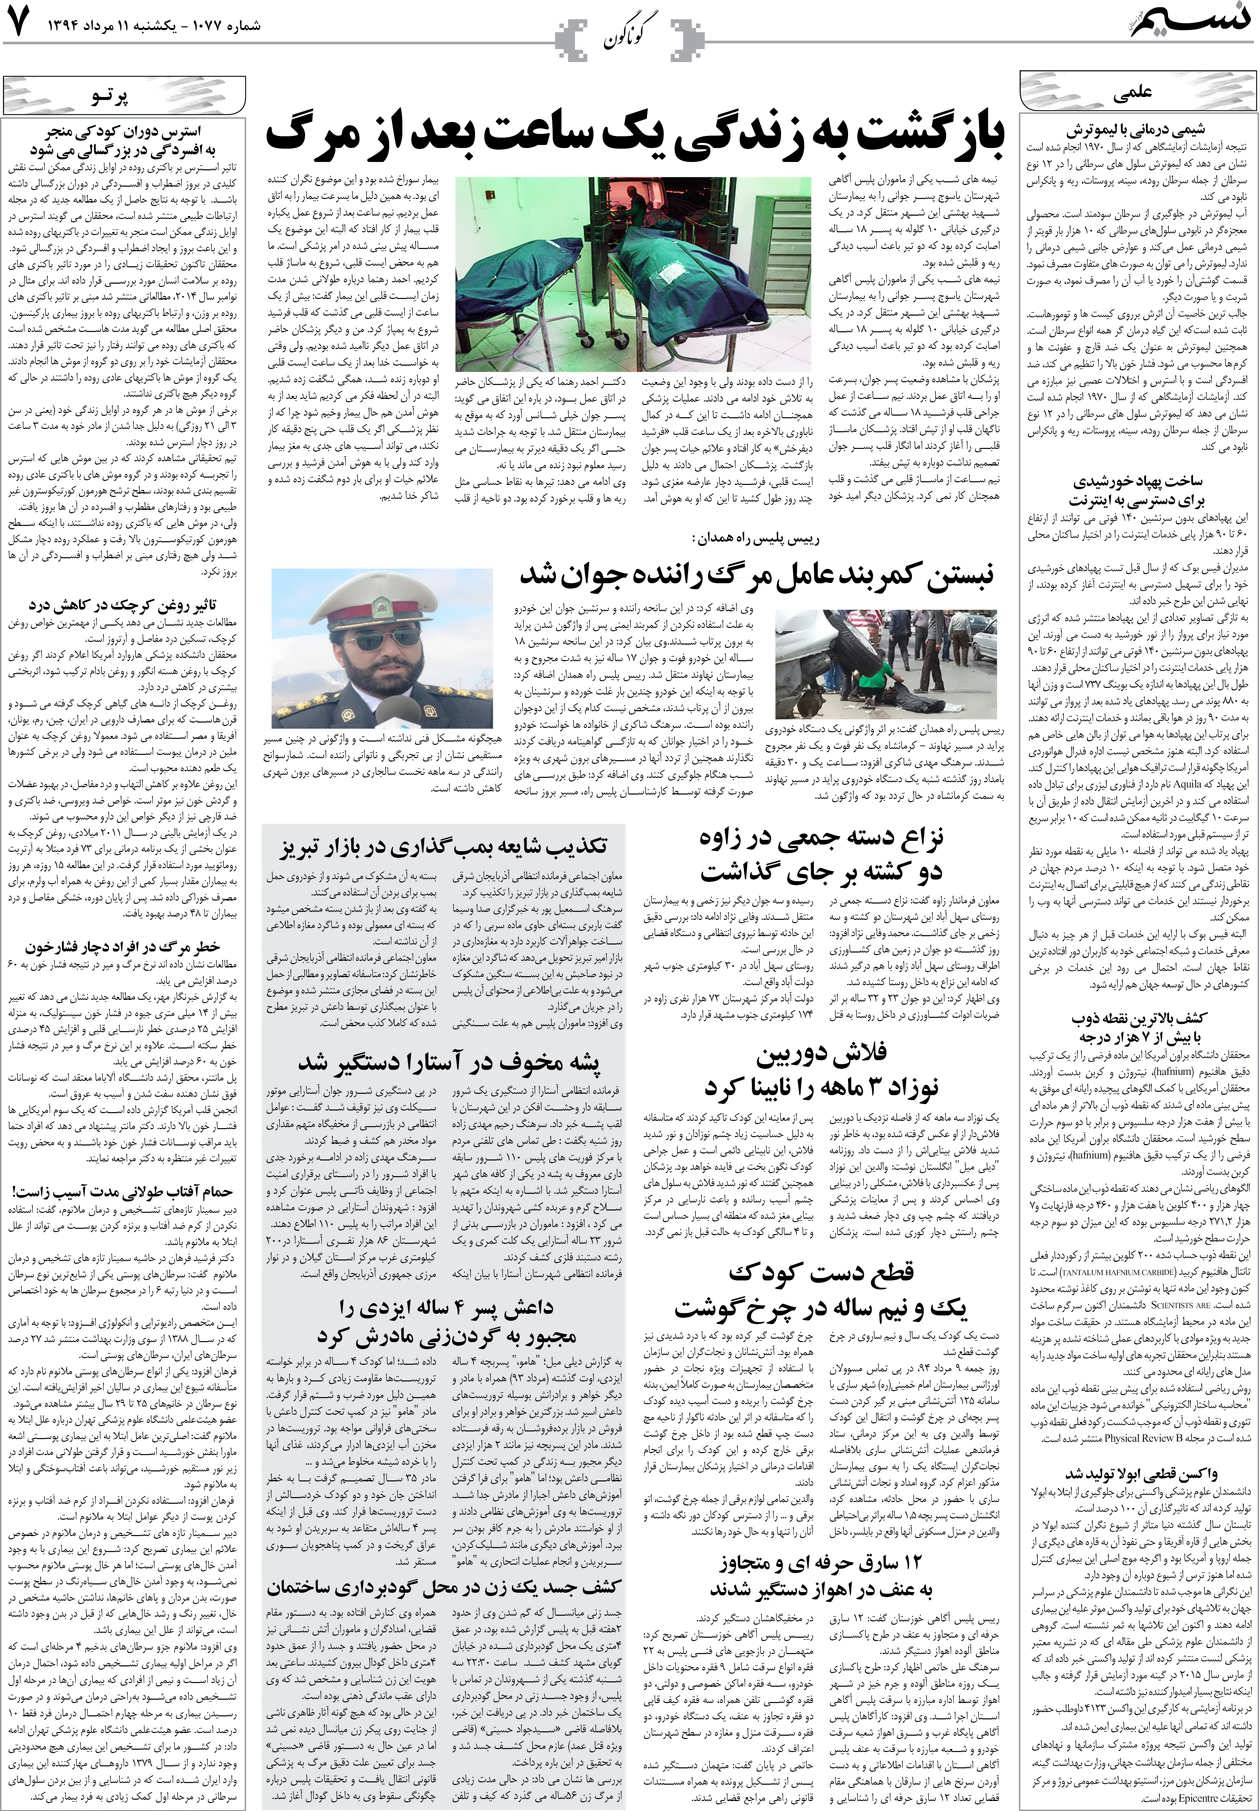 صفحه گوناگون روزنامه نسیم شماره 1077